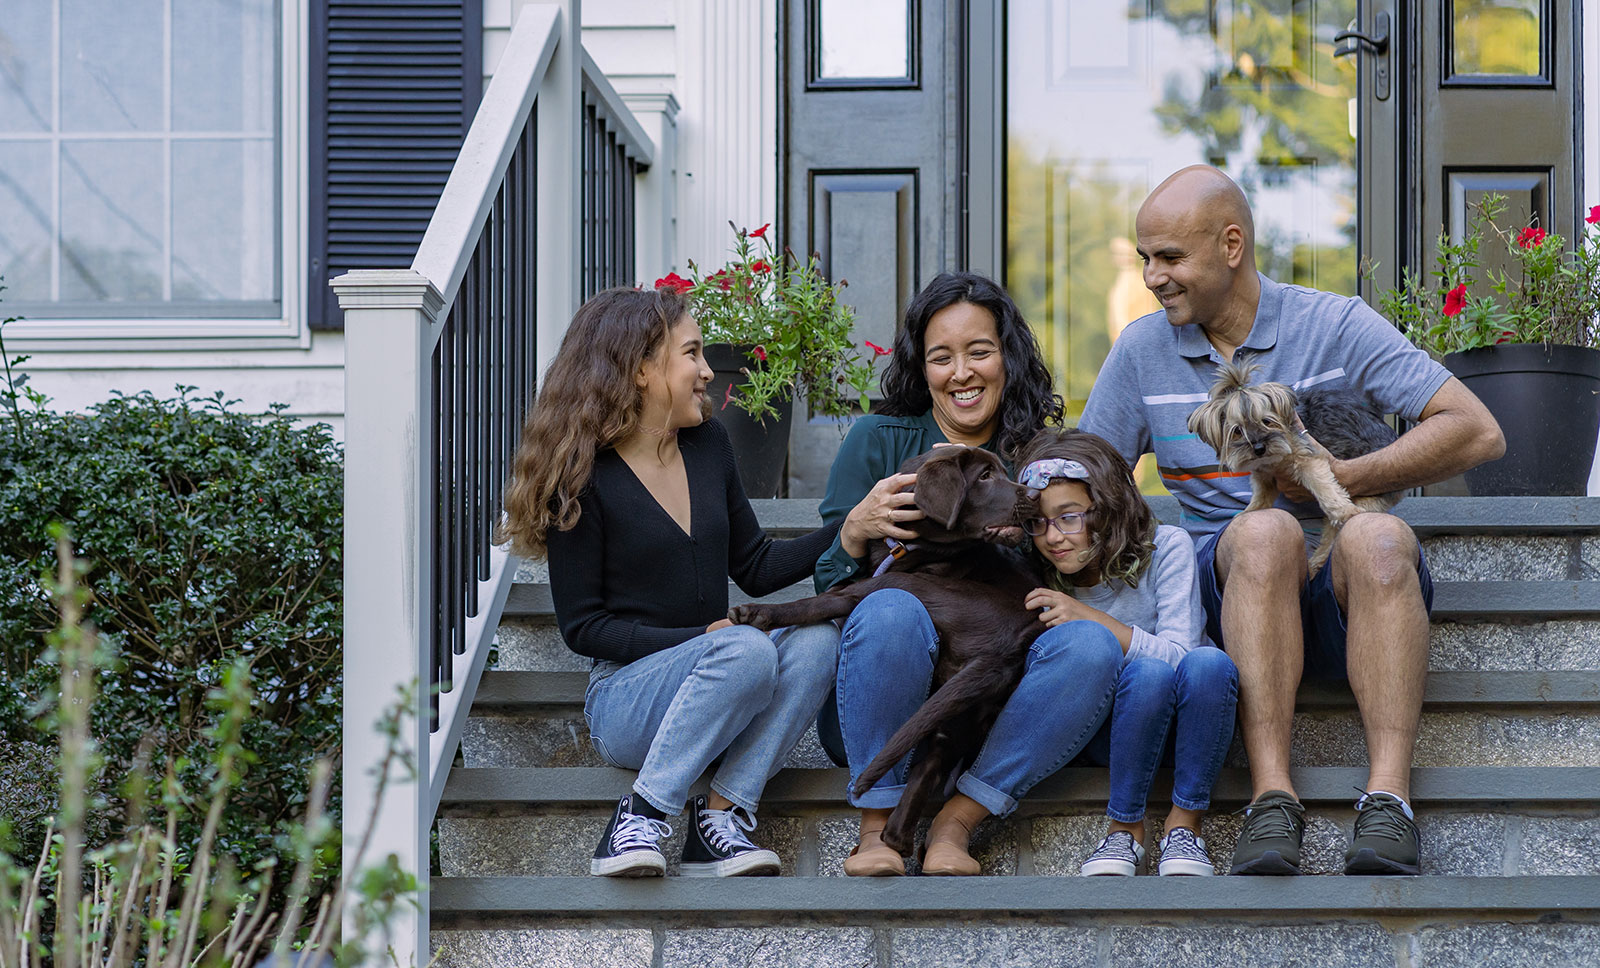 Une famille souriante est assise dans les escaliers devant une maison, accompagnée de deux chiens.